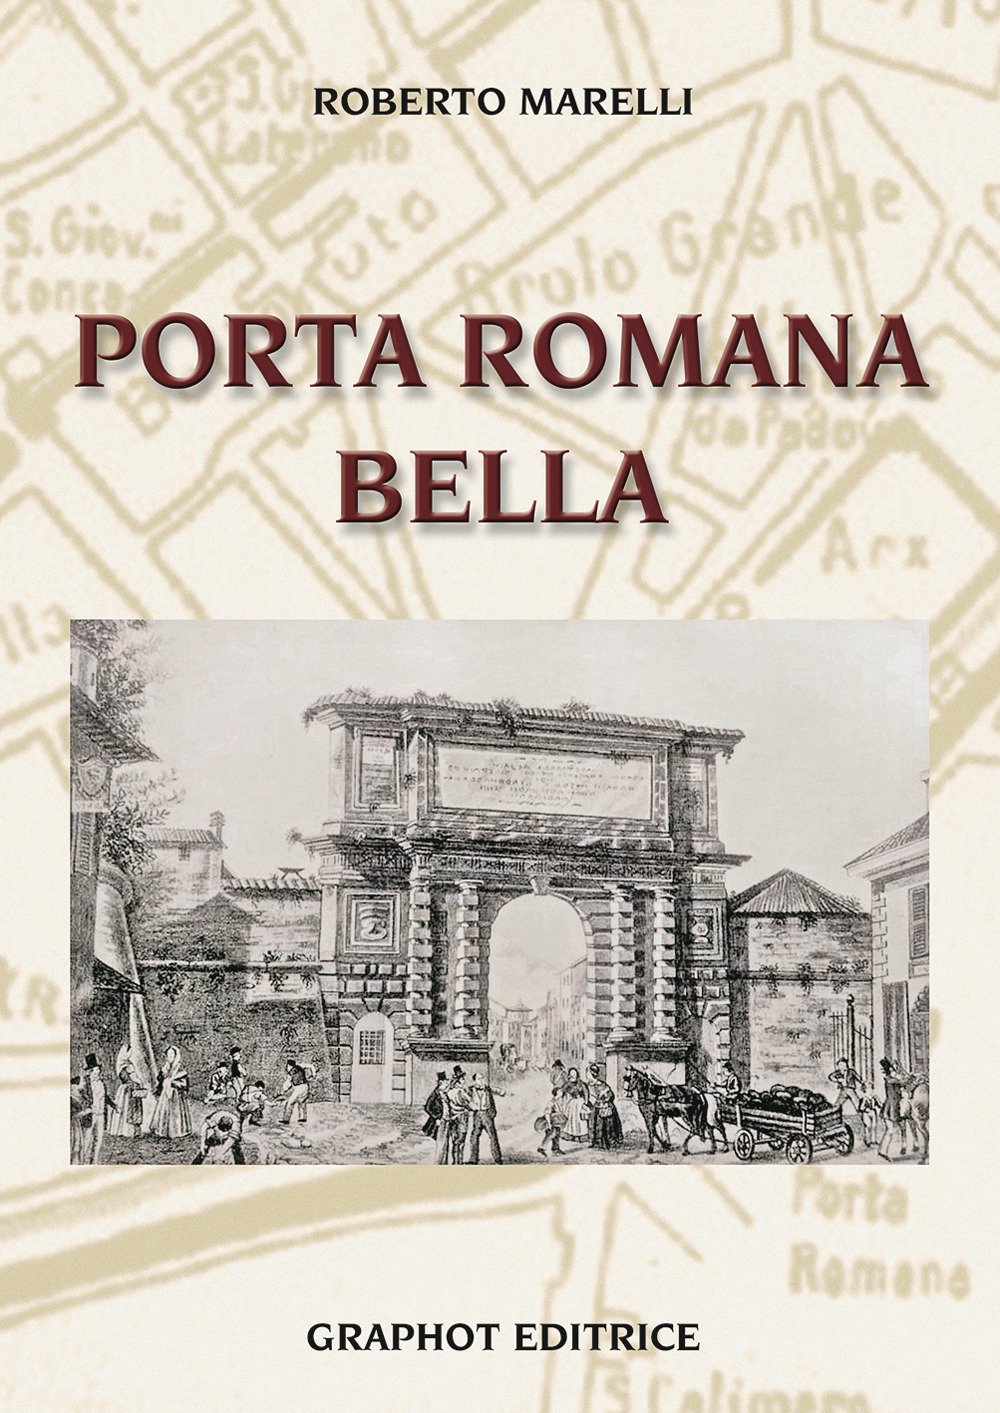 Libri Roberto Marelli - Porta Romana Bella NUOVO SIGILLATO, EDIZIONE DEL 30/11/2021 SUBITO DISPONIBILE